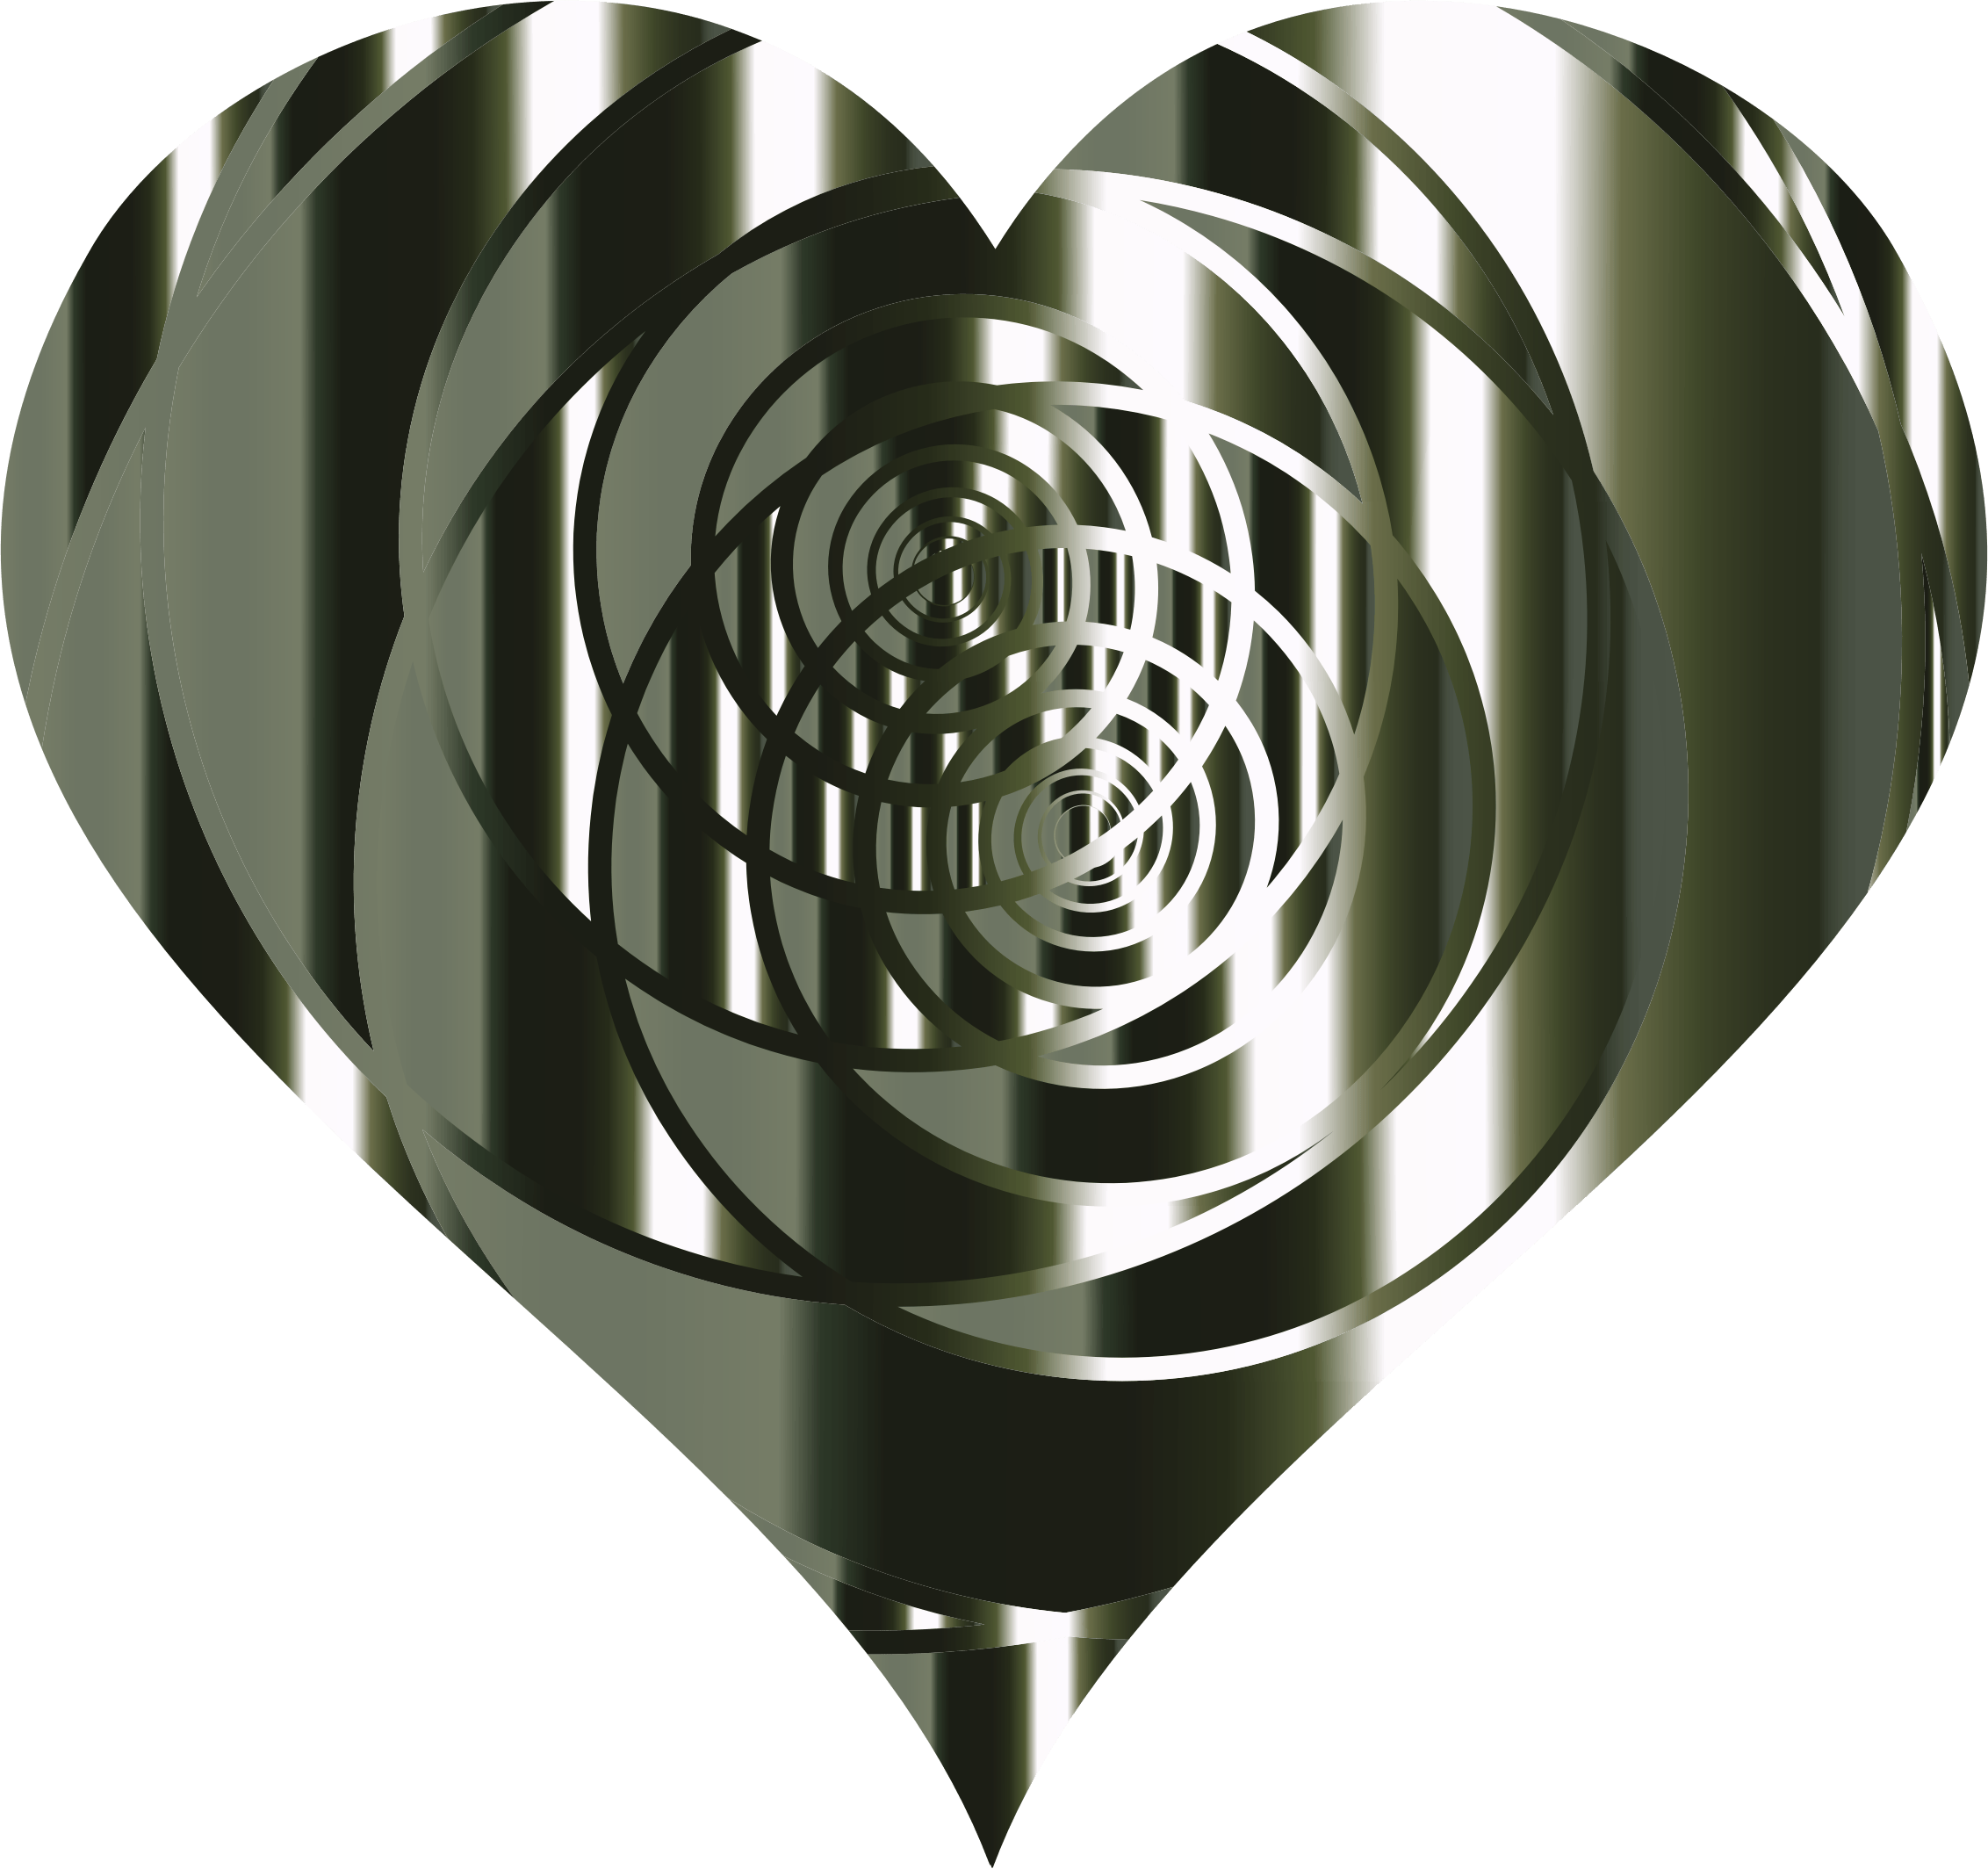 Spiral Heart Logo - Clipart - Spiral Heart 6